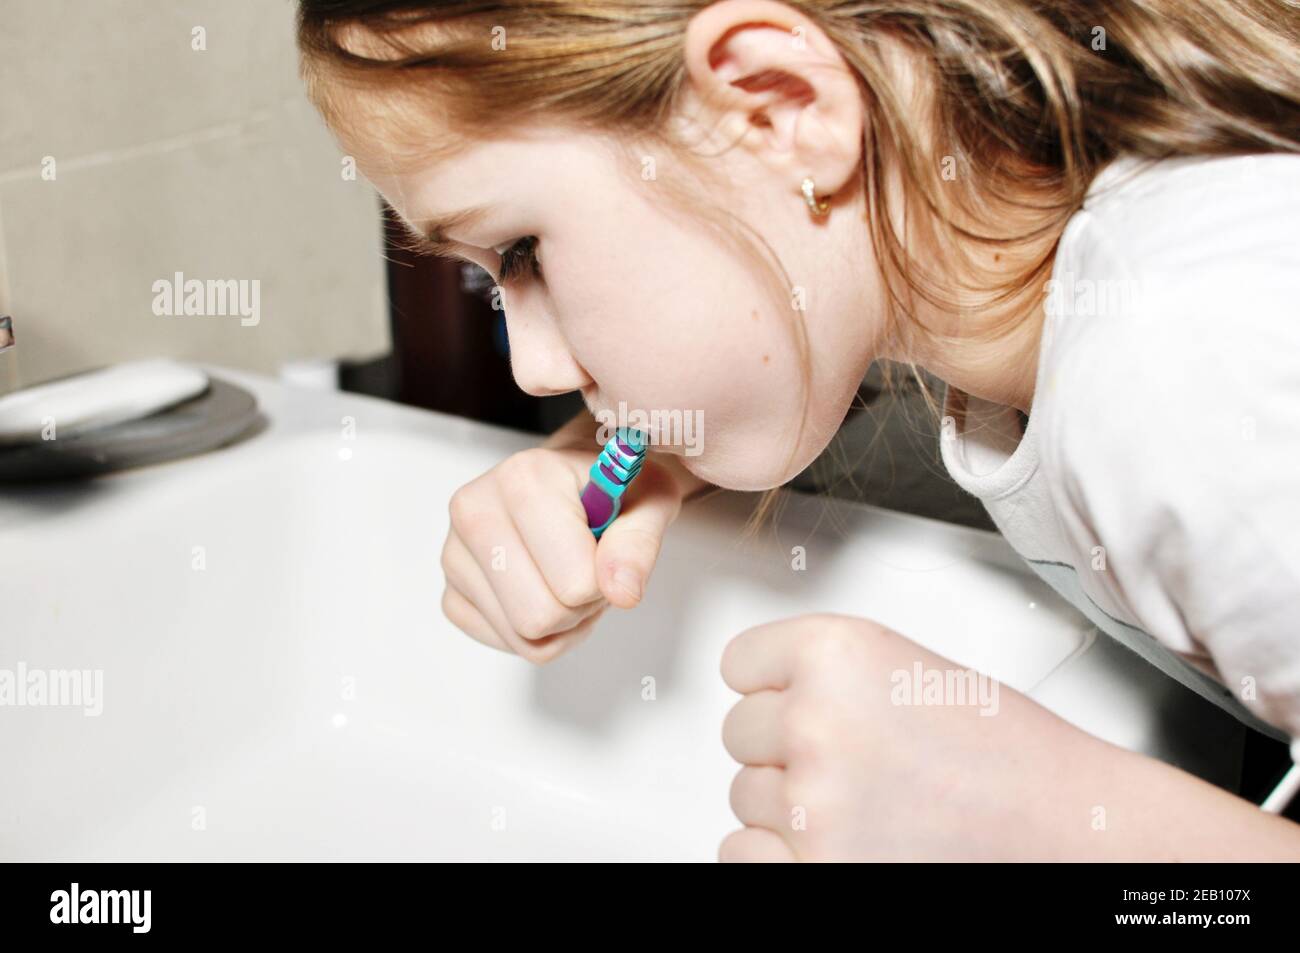 Blanc caucasien enfant (enfant), fille, laver ses dents avec une brosse à dents dans la salle de bains. Soins dentaires. Banque D'Images